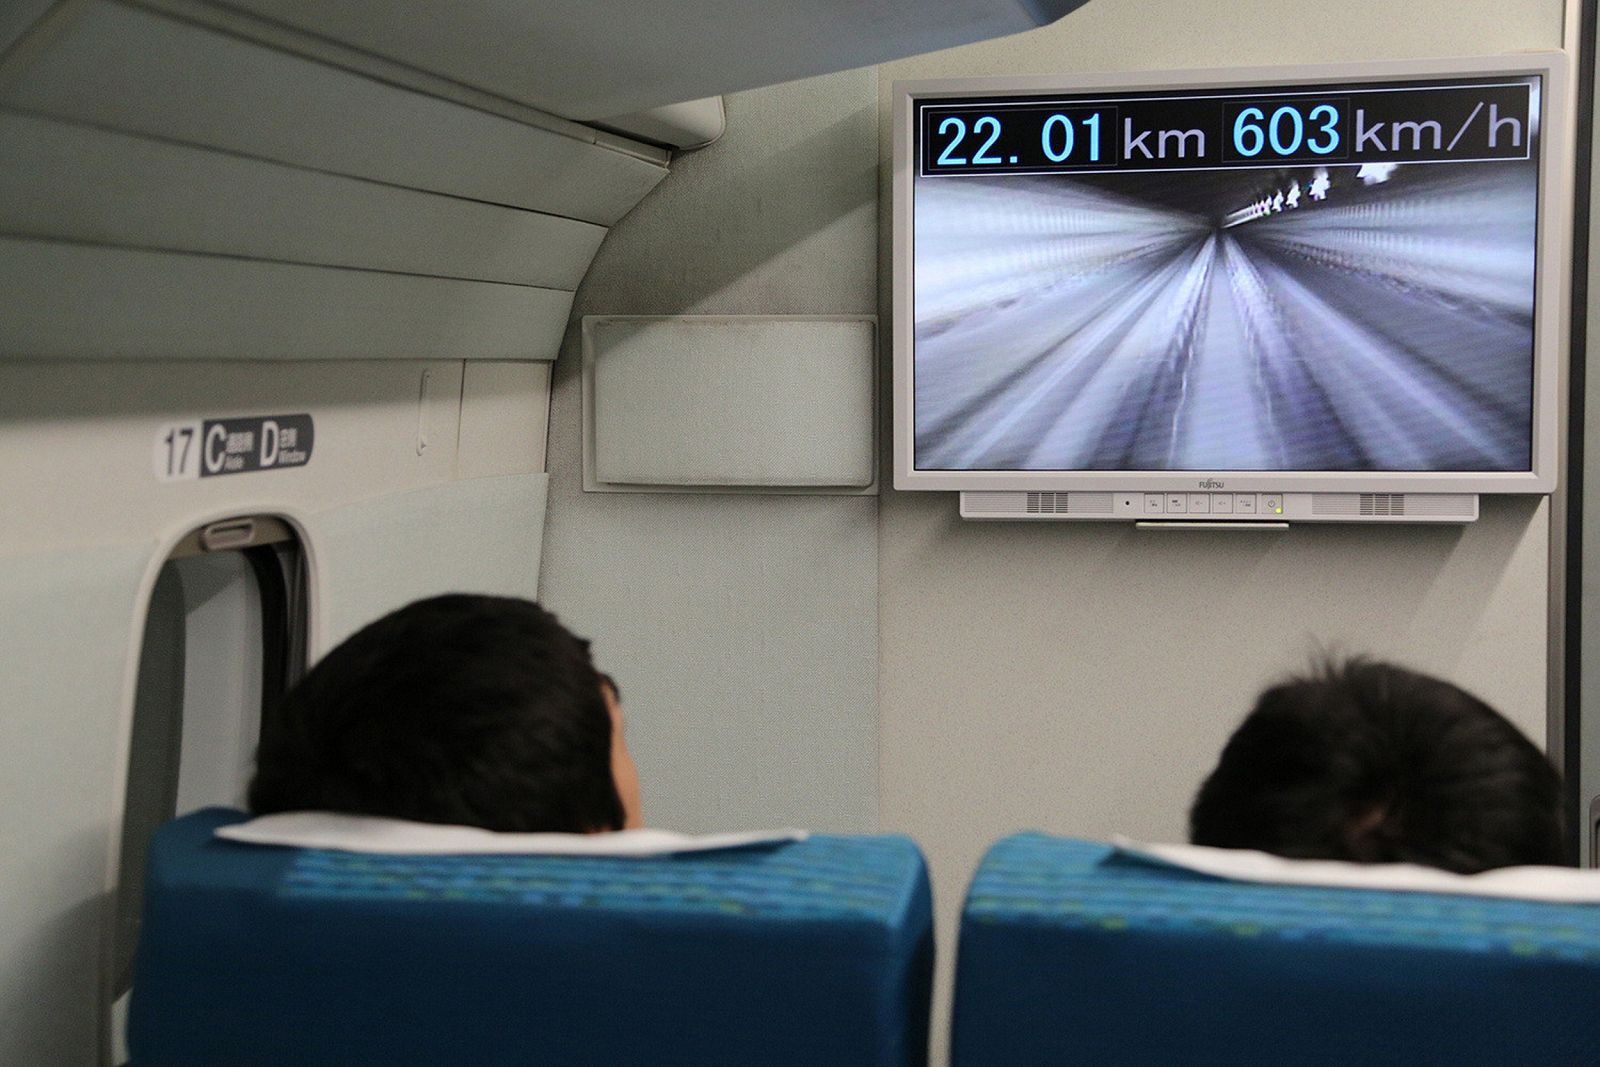 Pasajeros en el viaje de prueba del Maglev japonés observando la pantalla que marca 603 km/h de velocidad.